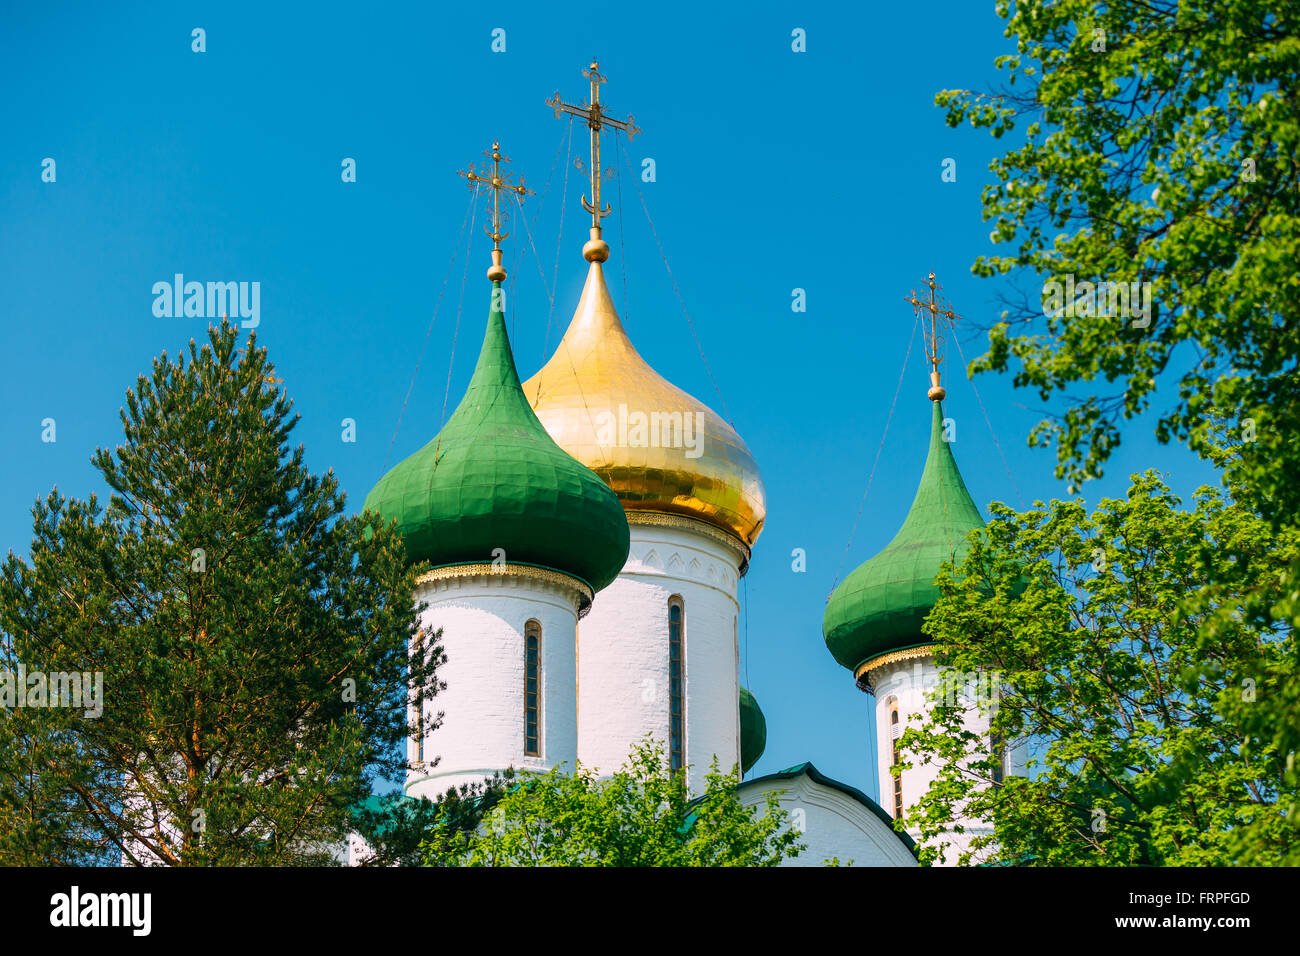 Dans la cathédrale de la Transfiguration Monastère de Saint Euthymius à Suzdal, la Russie. Le monastère a été fondé au 14e siècle Banque D'Images